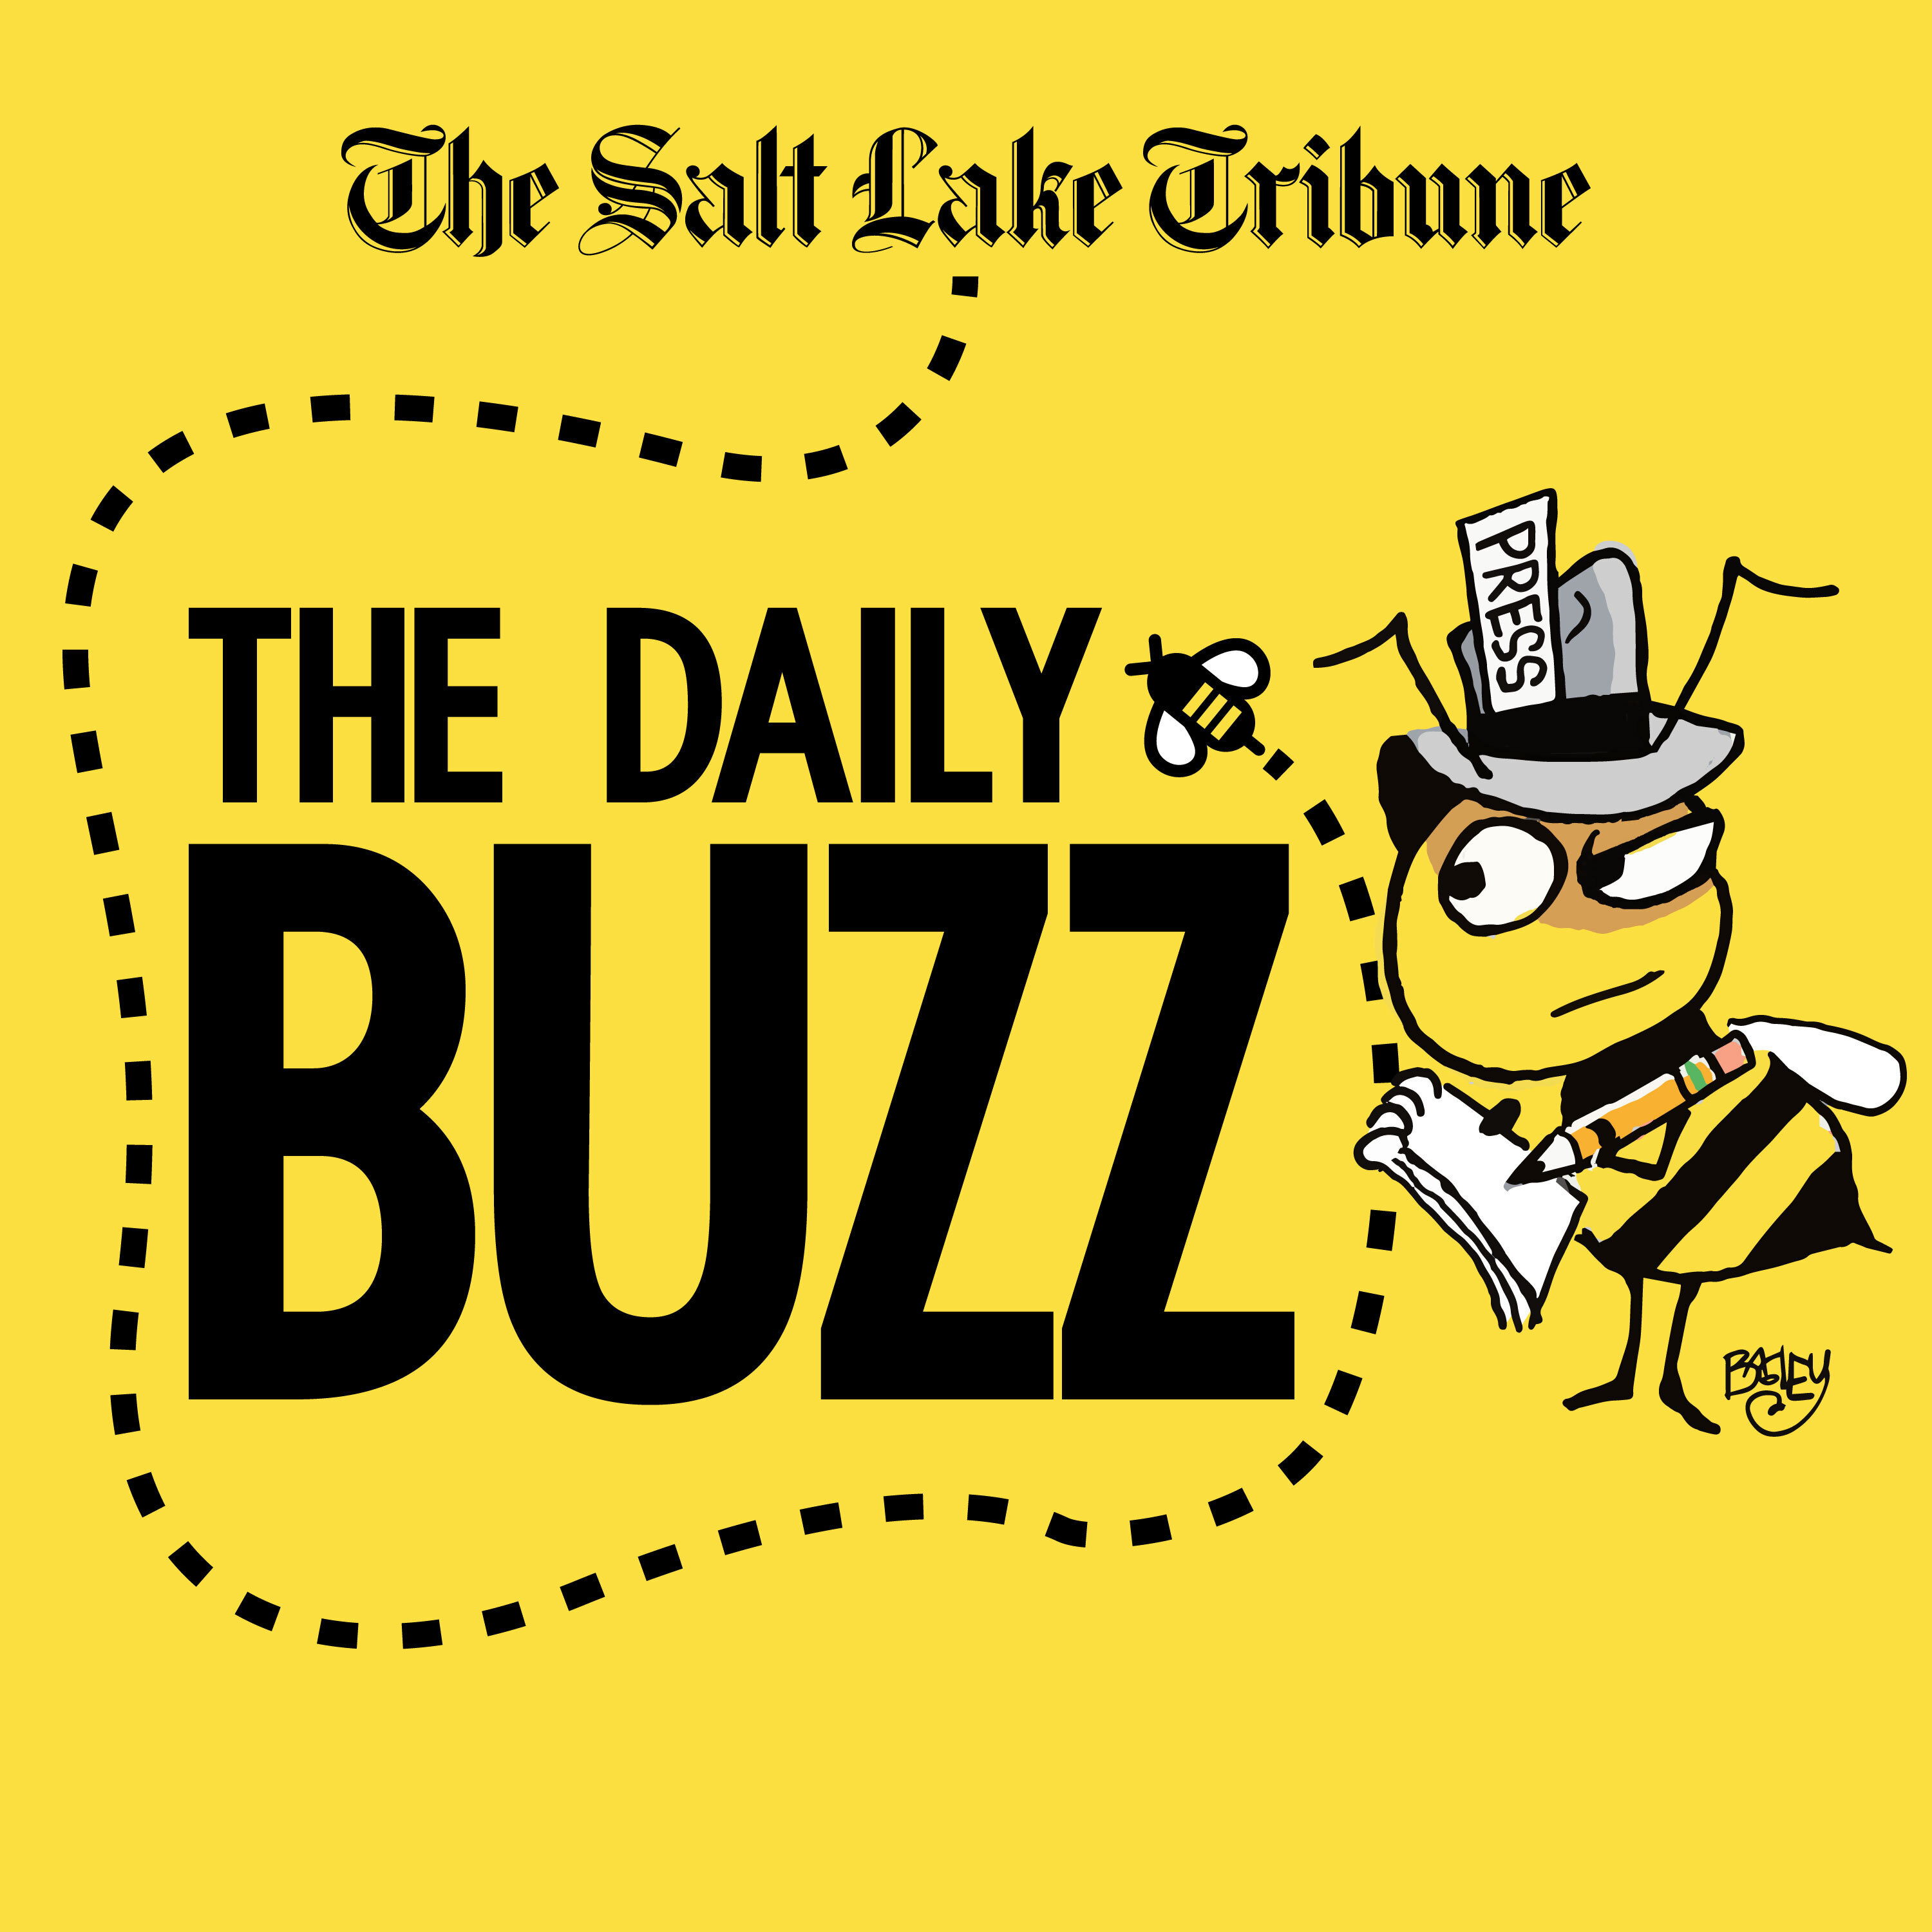 The Daily Buzz logo